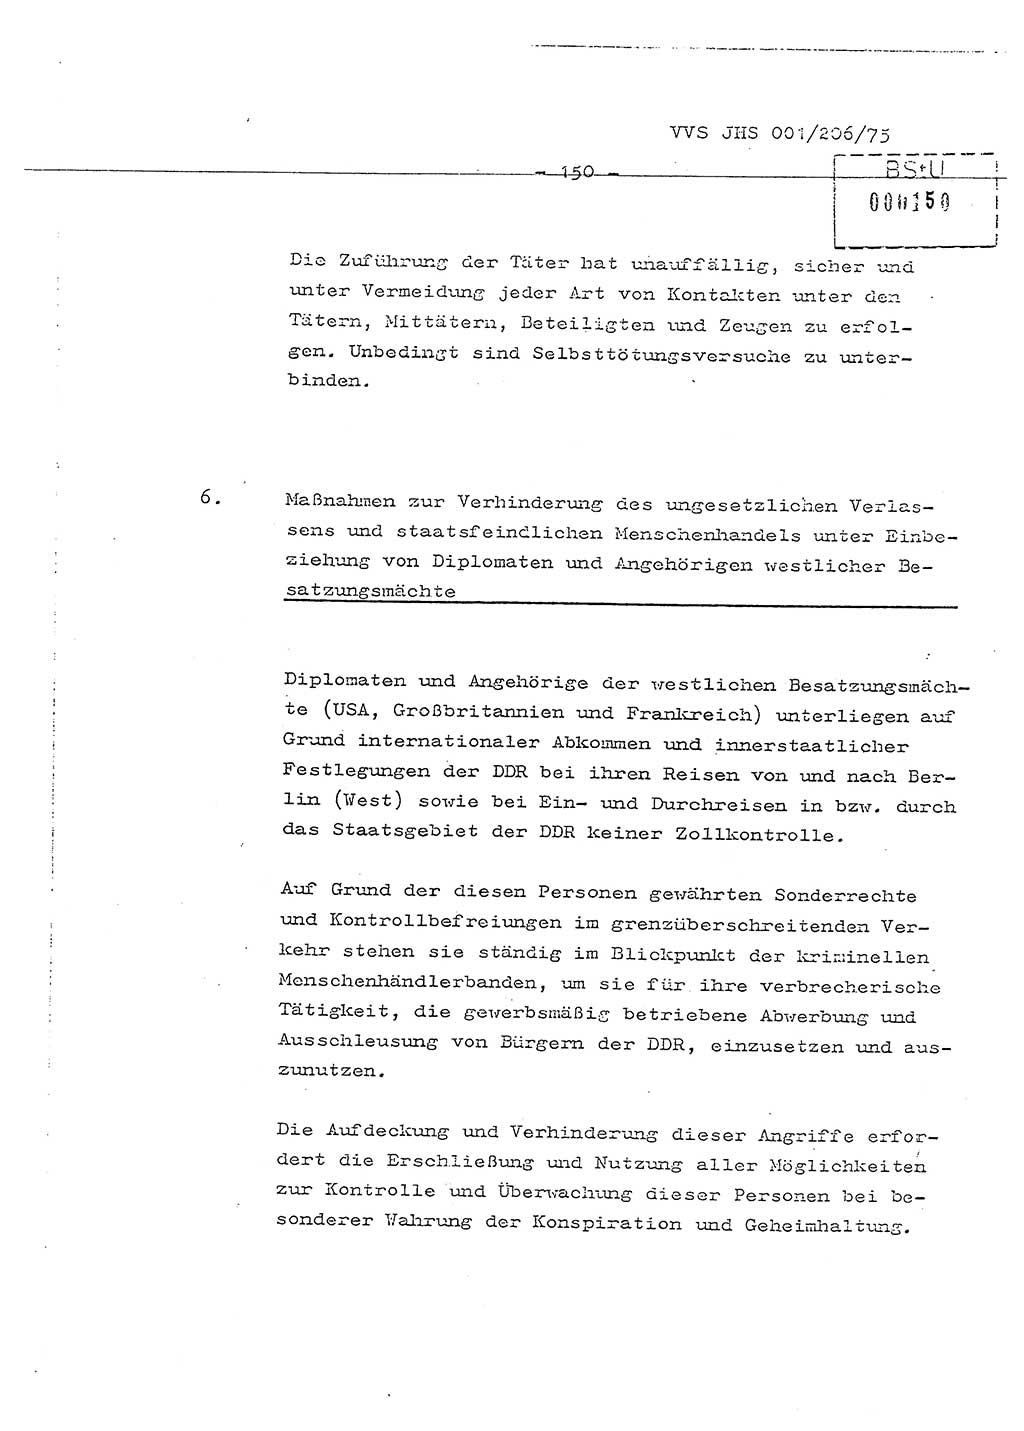 Dissertation Generalmajor Manfred Hummitzsch (Leiter der BV Leipzig), Generalmajor Heinz Fiedler (HA Ⅵ), Oberst Rolf Fister (HA Ⅸ), Ministerium für Staatssicherheit (MfS) [Deutsche Demokratische Republik (DDR)], Juristische Hochschule (JHS), Vertrauliche Verschlußsache (VVS) 001-206/75, Potsdam 1975, Seite 150 (Diss. MfS DDR JHS VVS 001-206/75 1975, S. 150)